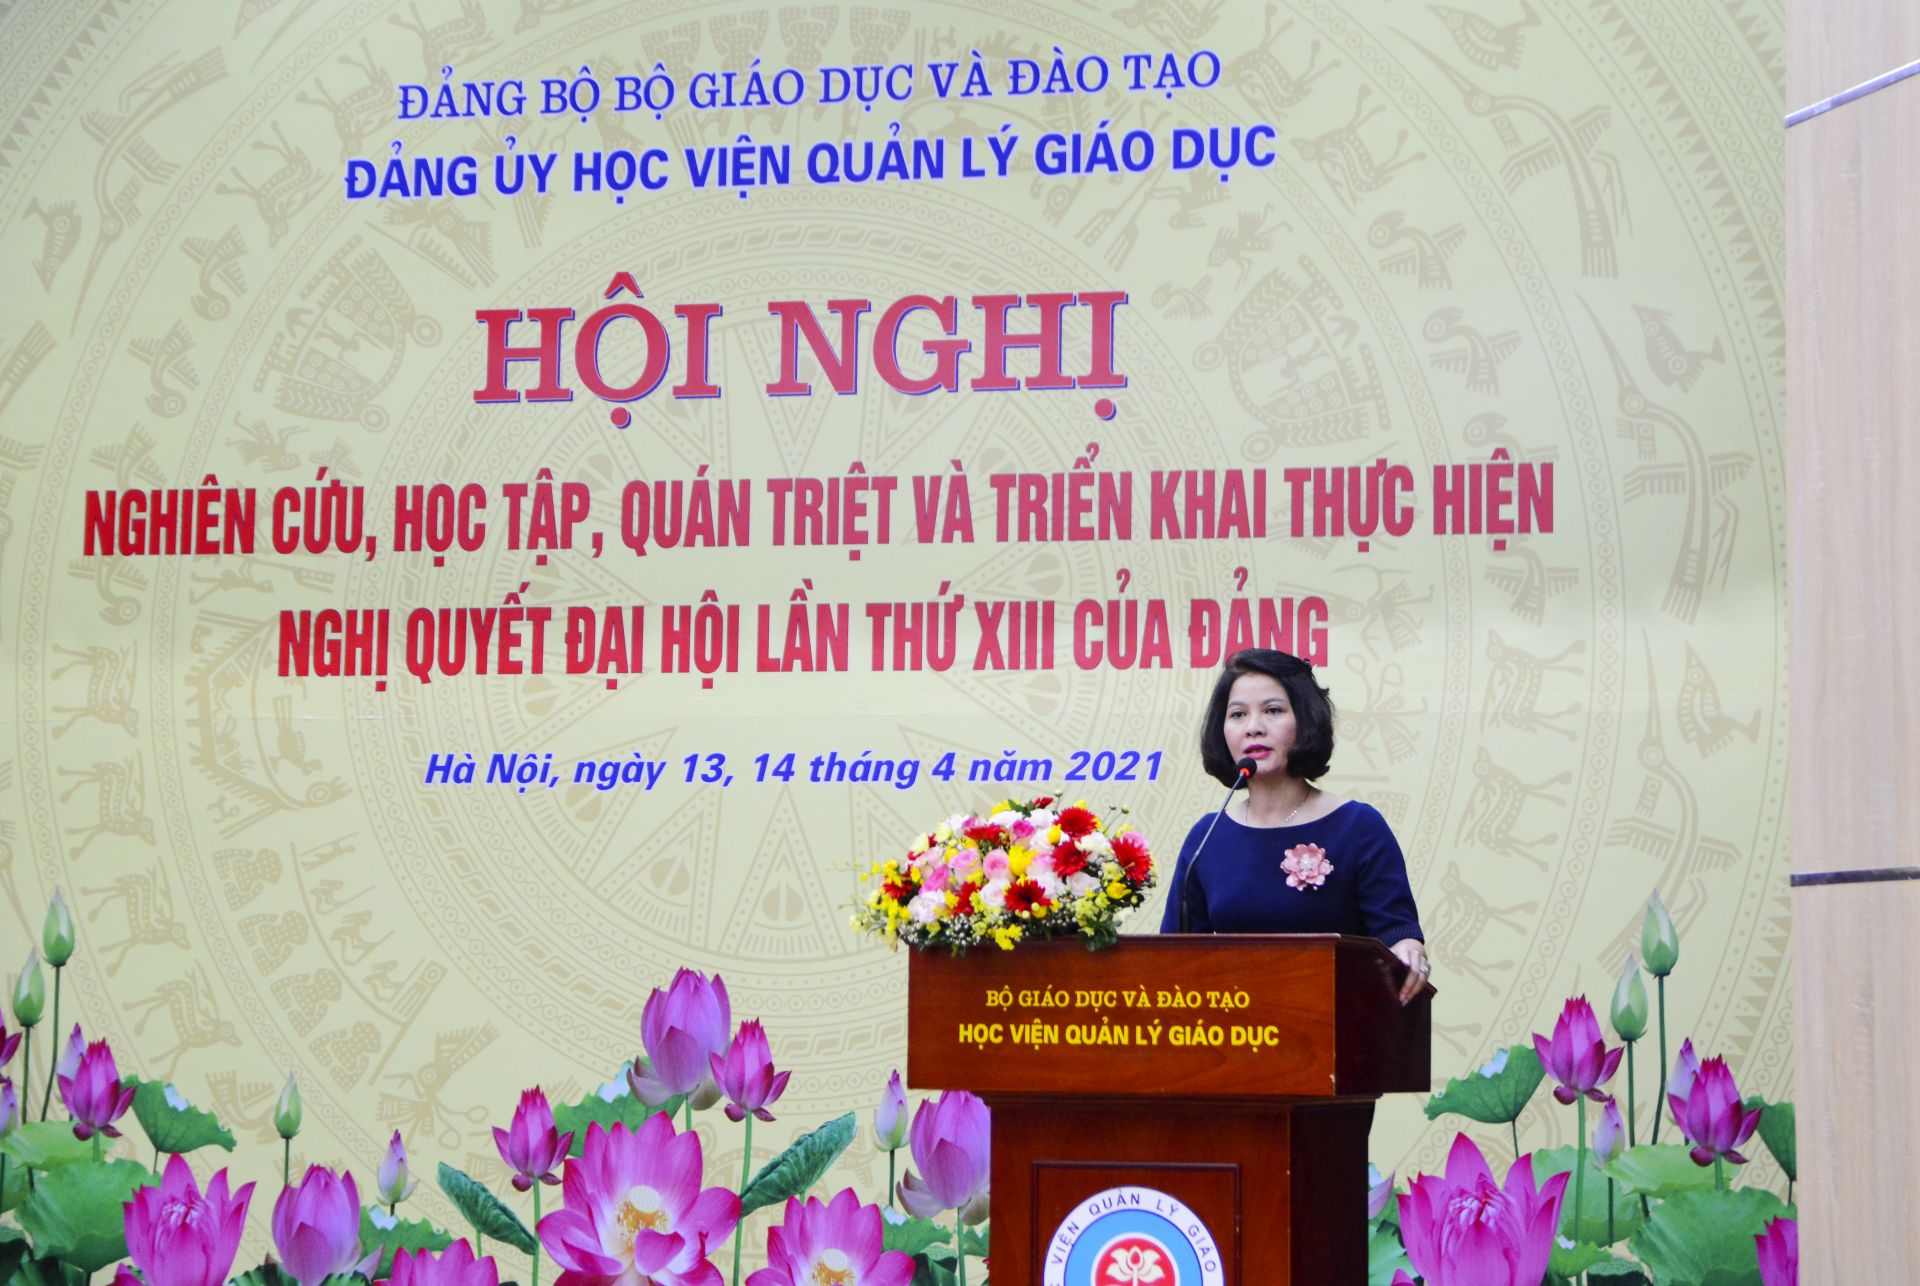 PGS.TS Nguyễn Thị Thu Hằng, Bí thư Đảng ủy, Chủ tịch Hội đồng Học viện Quản lý giáo dục